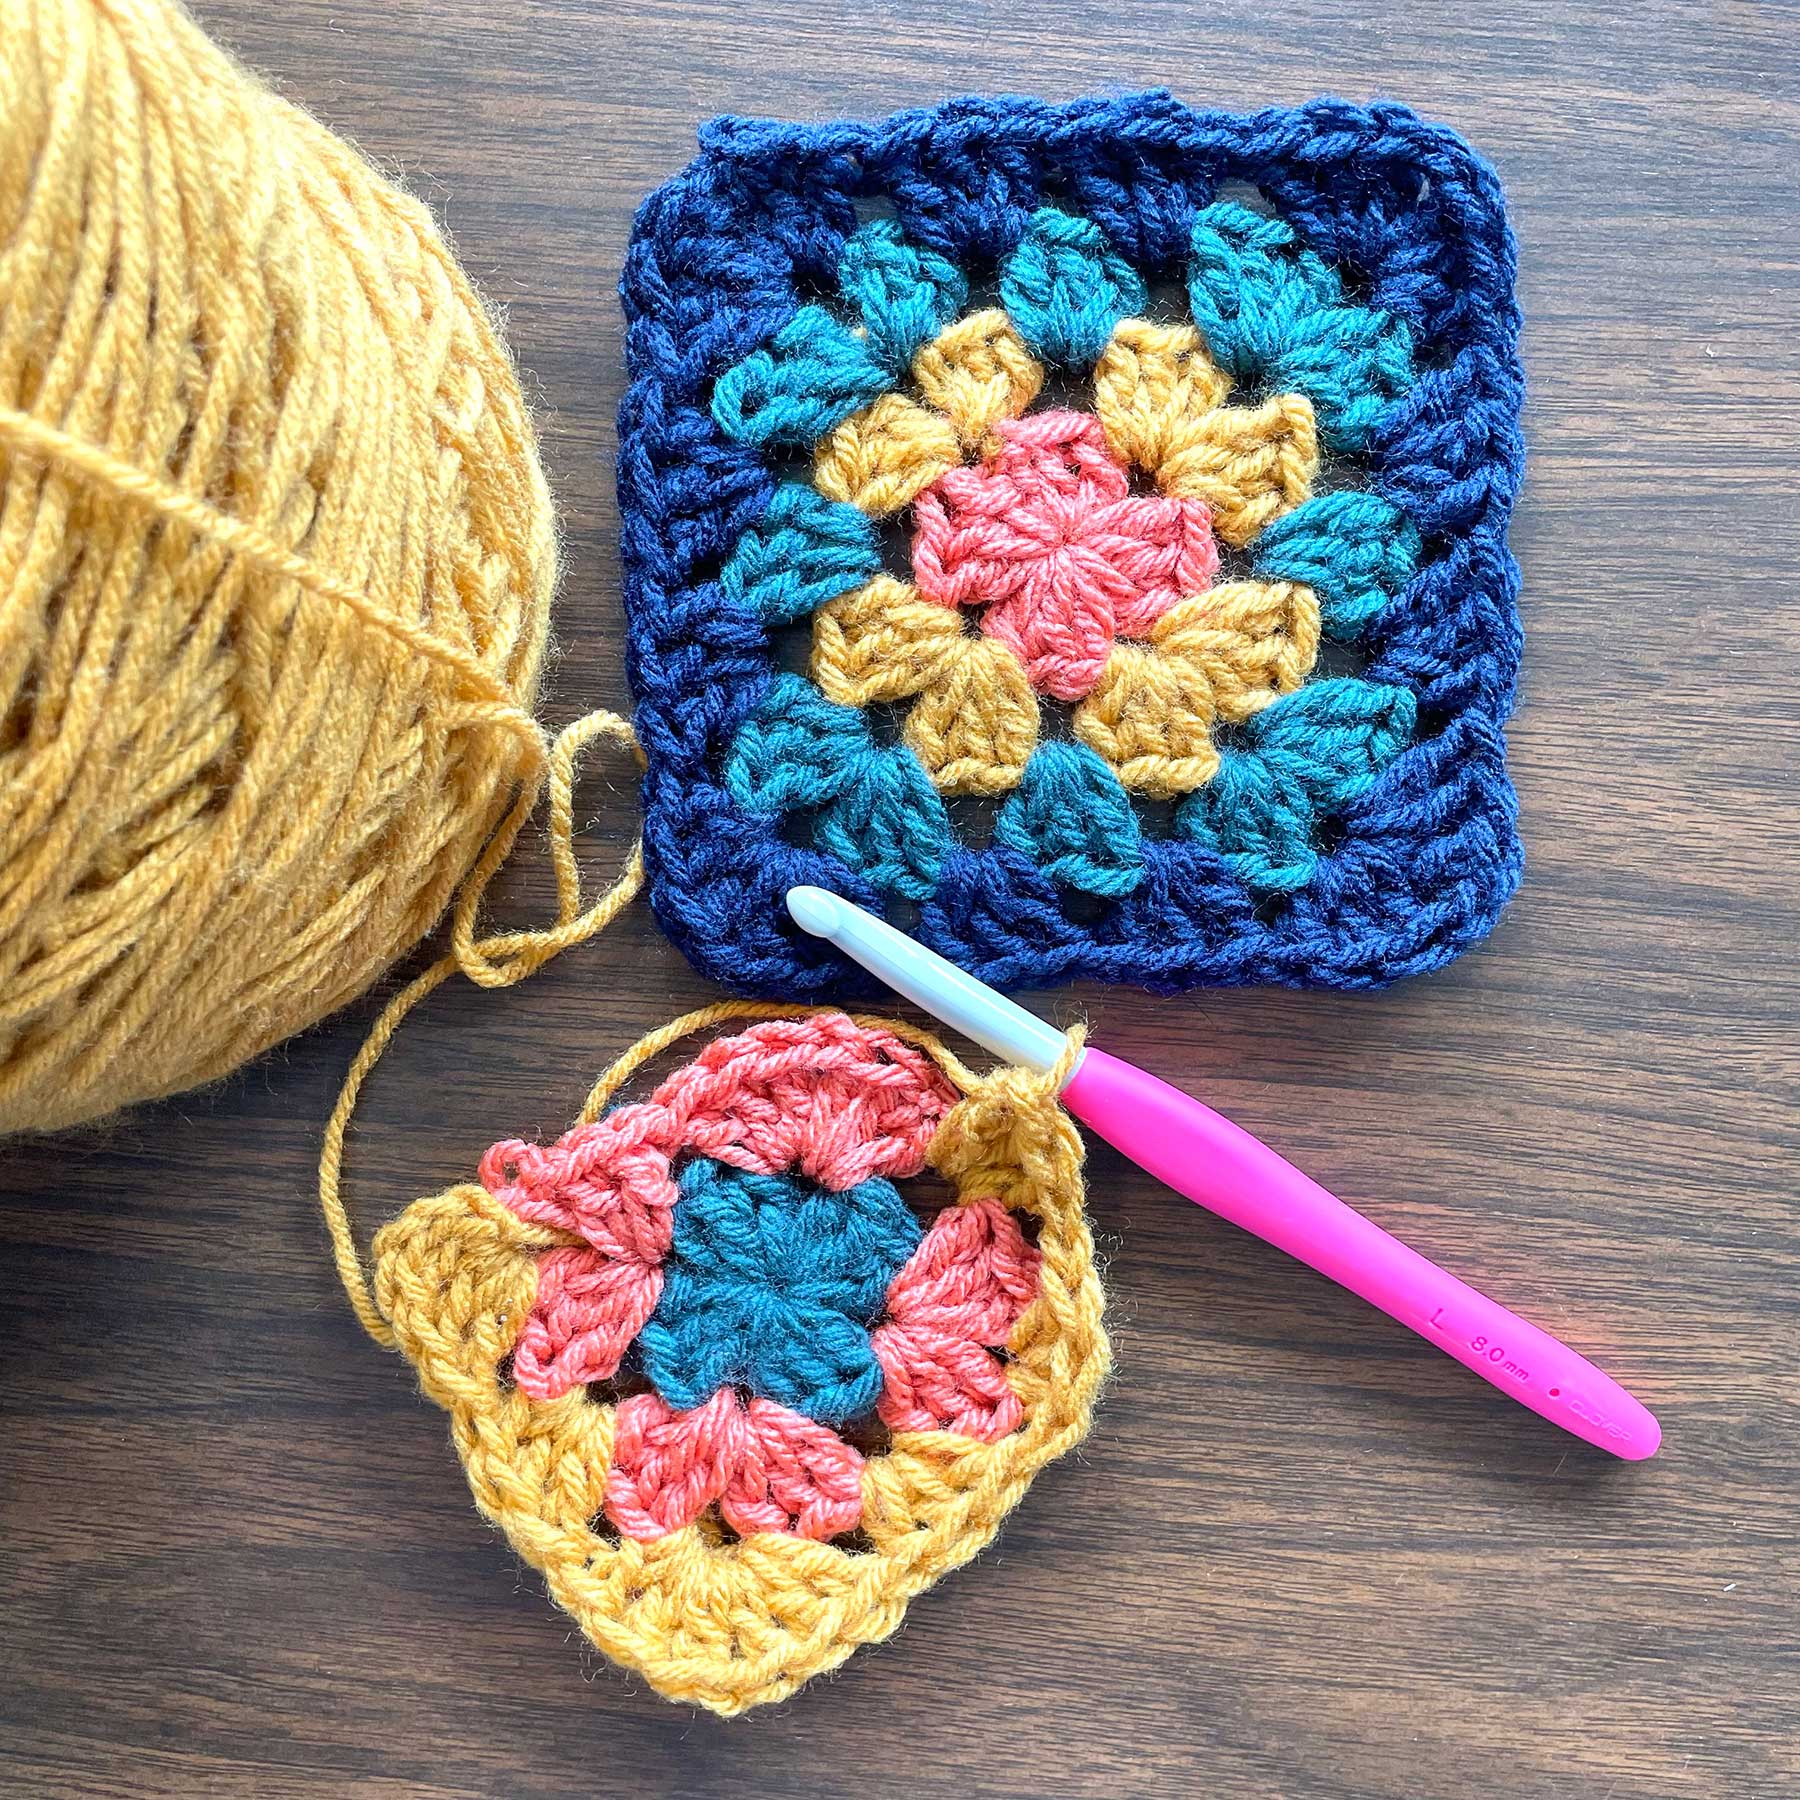 Unraveled Crochet Granny Square Fiber